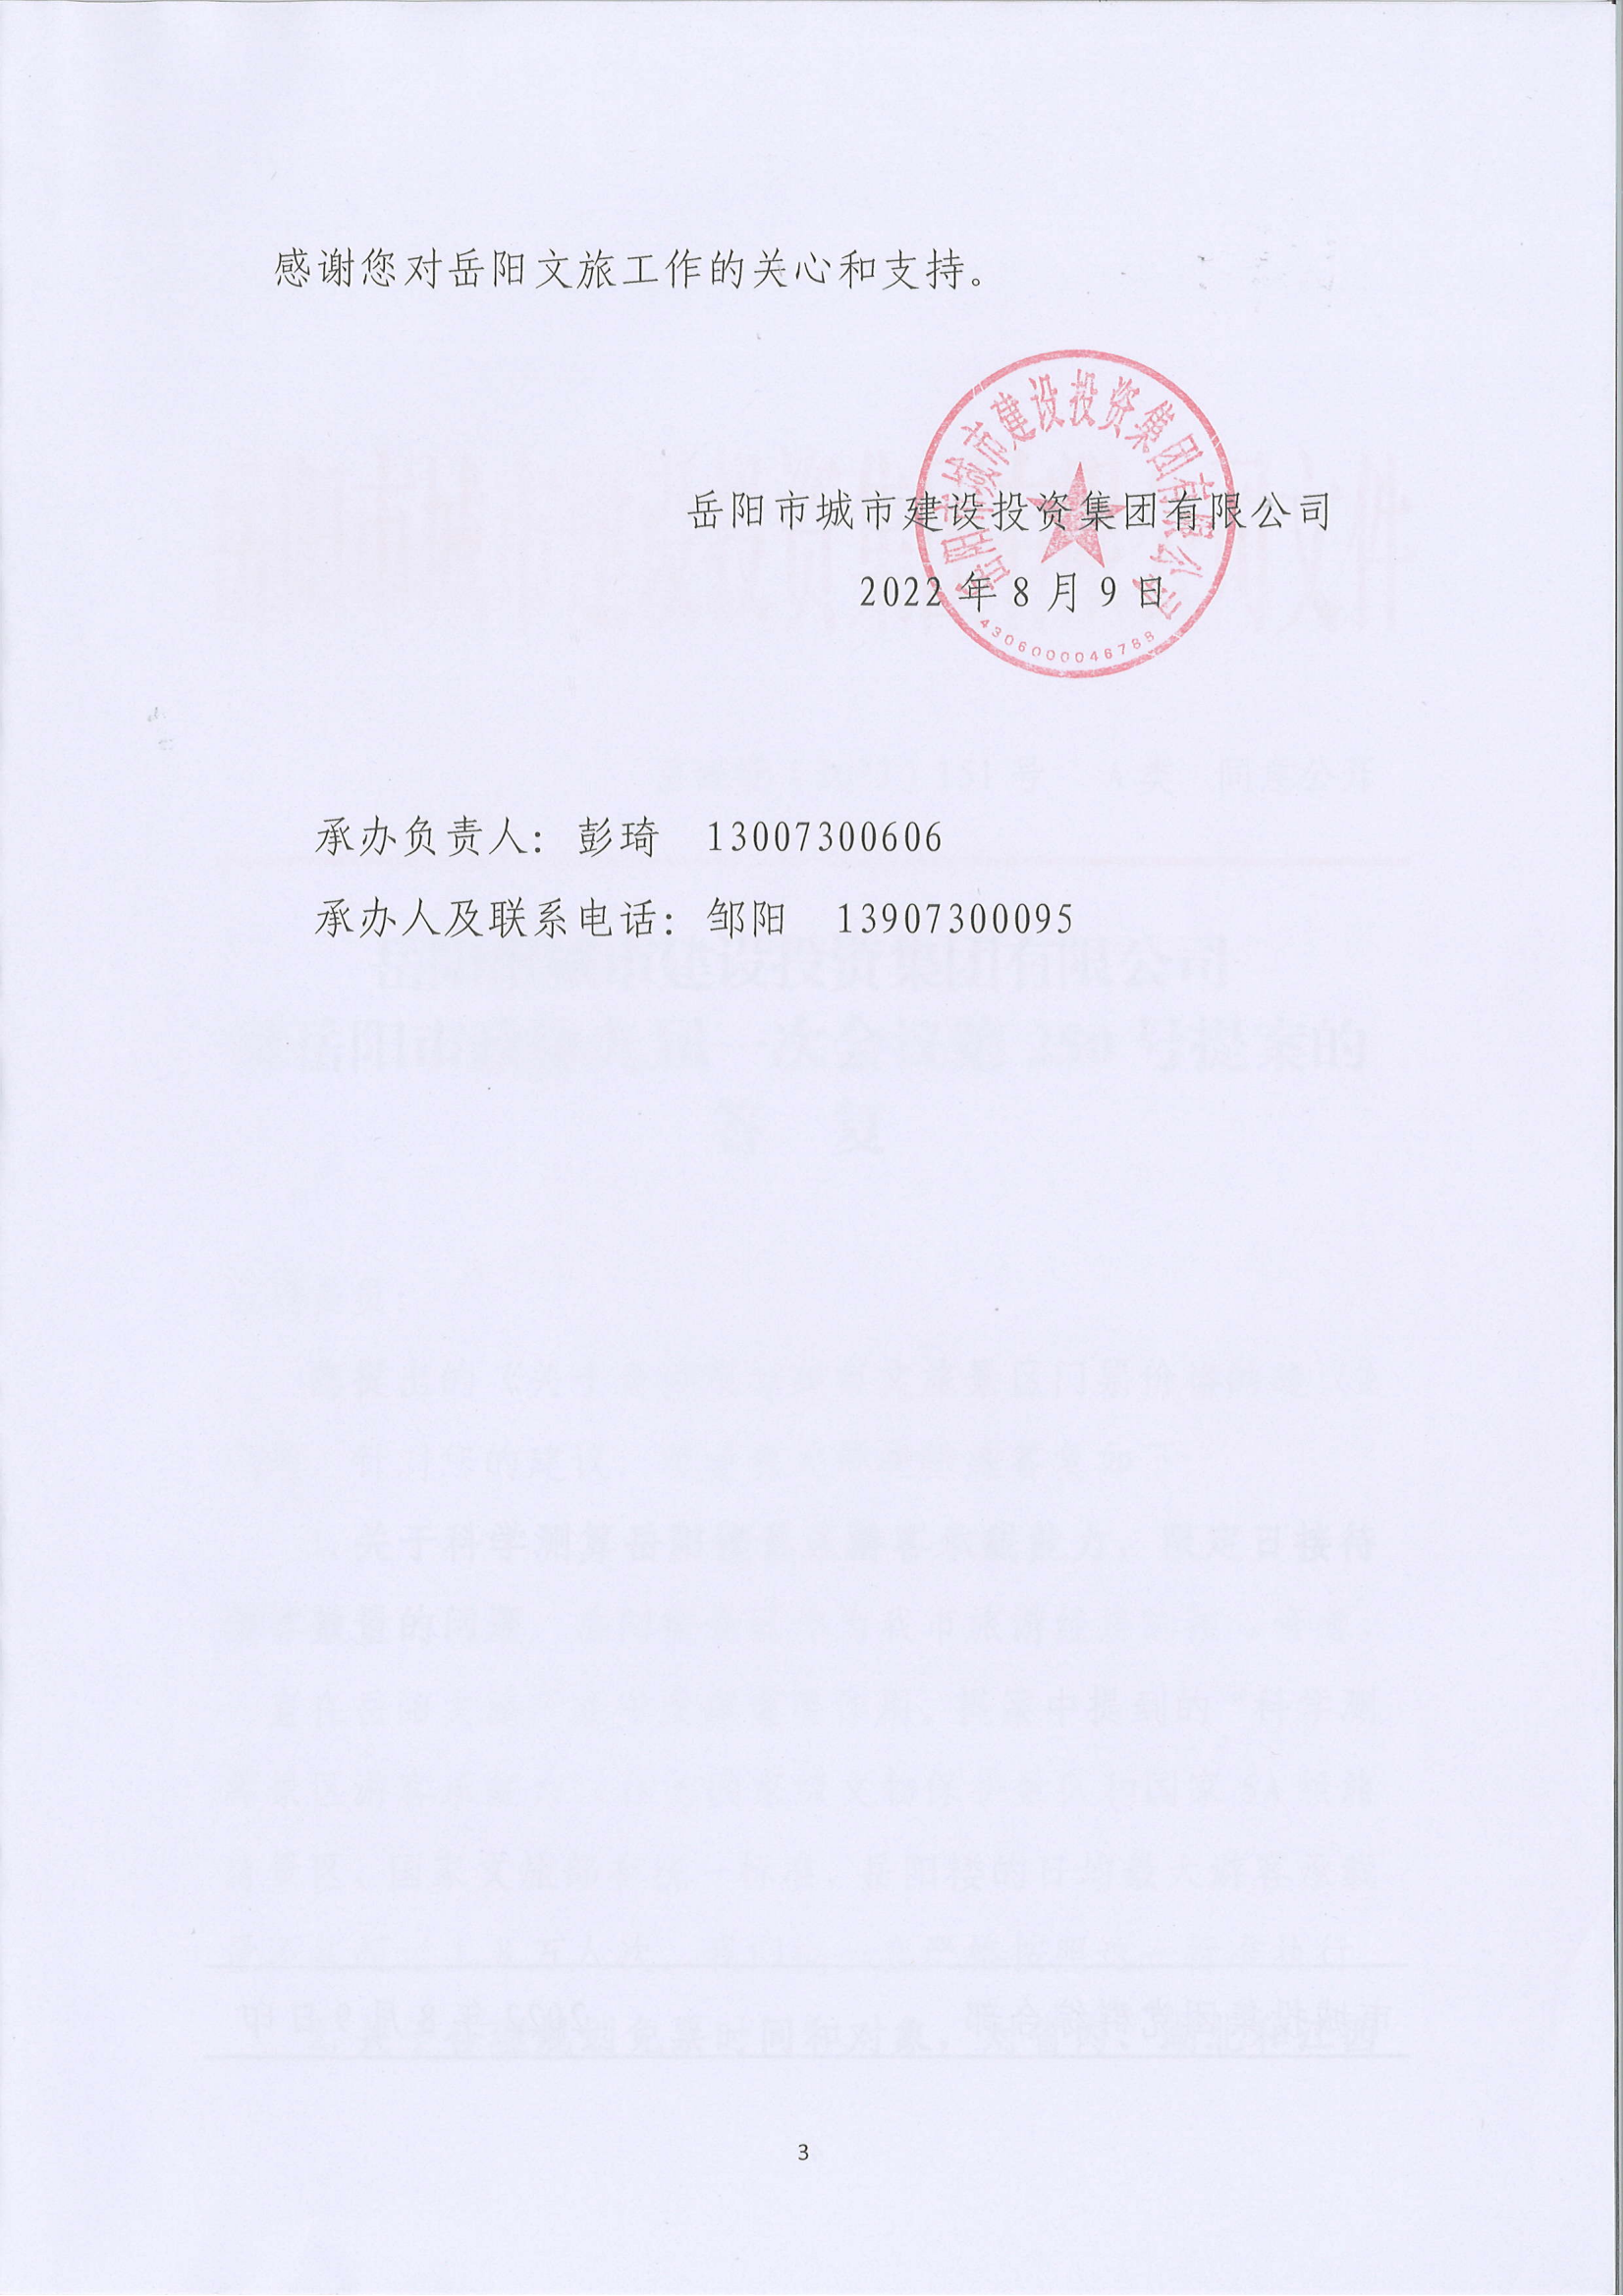 250提案-岳阳市政协九届一次会议第250号提案的答复(2)_02.png